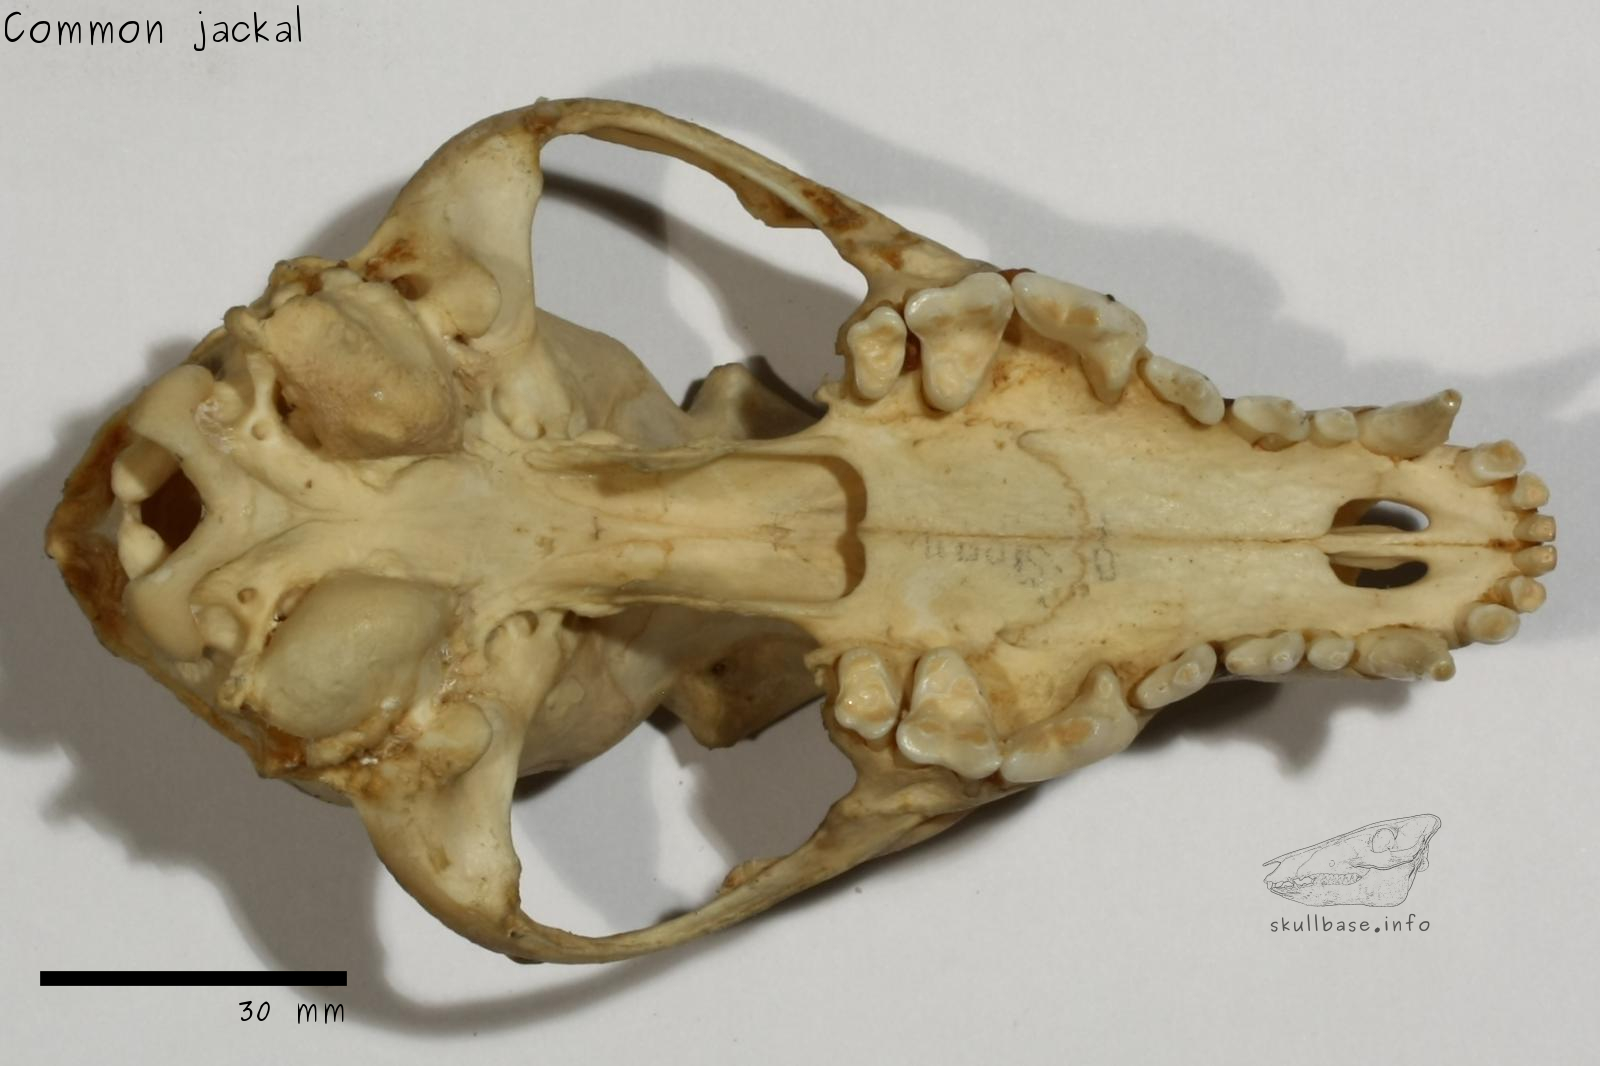 Common jackal (Canis aureus aureus) skull ventral view